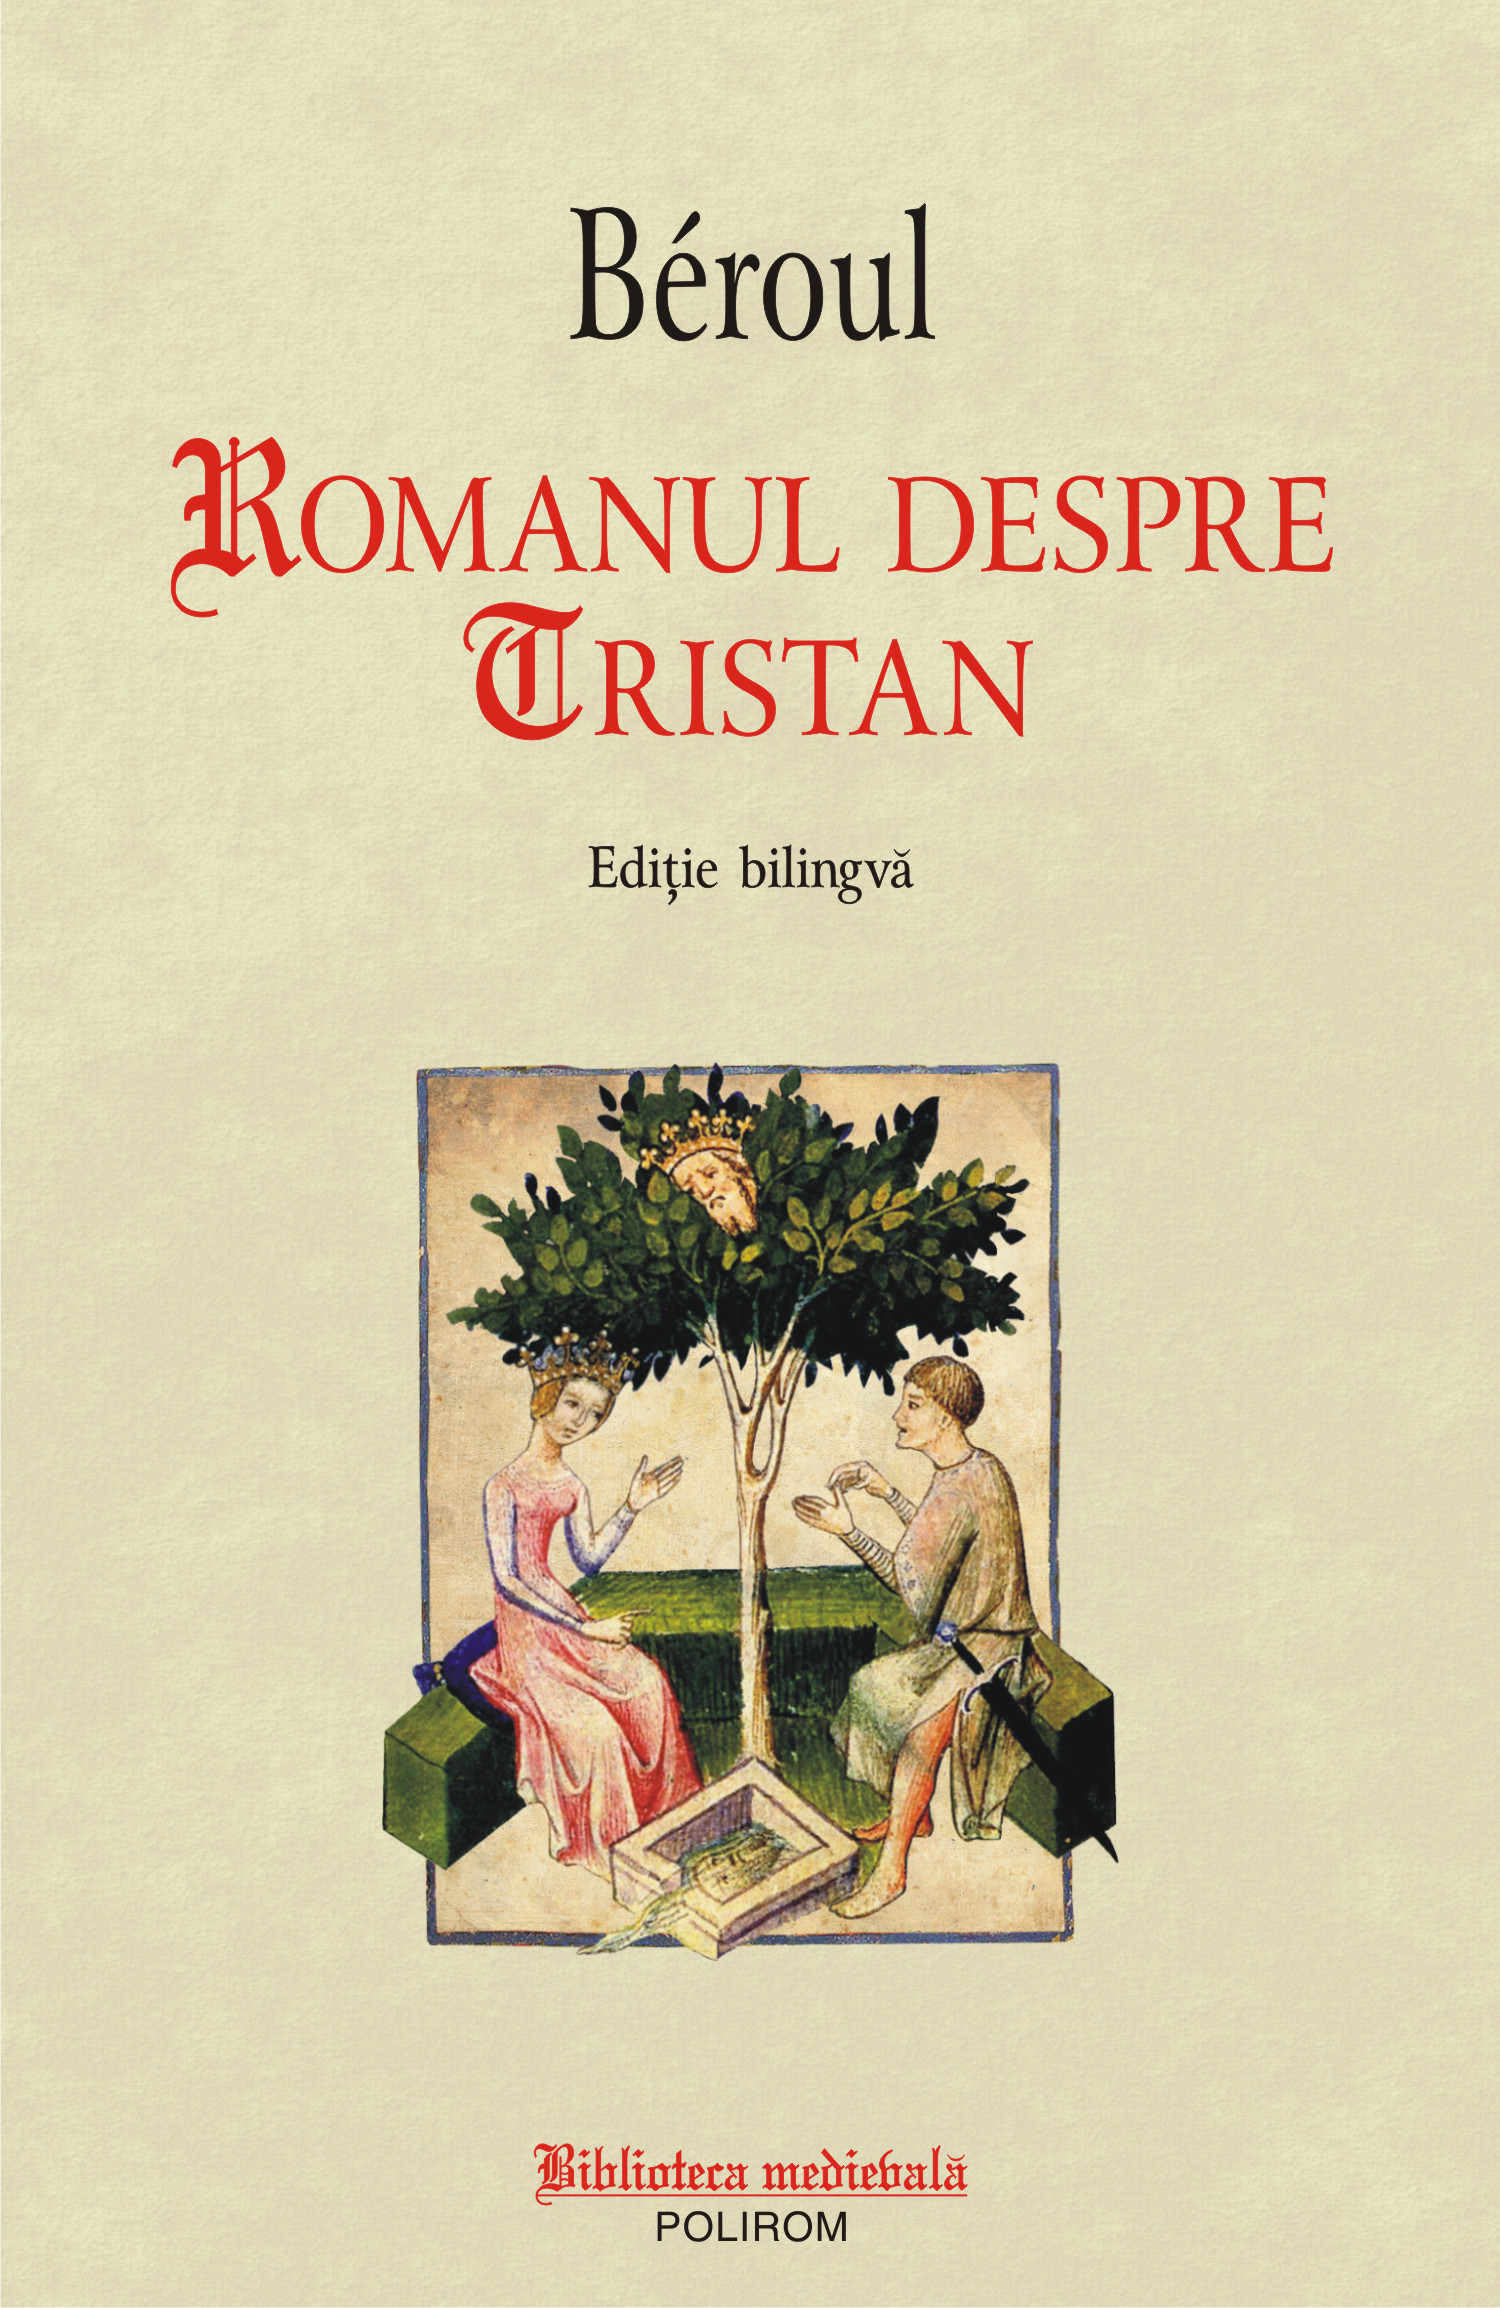 eBook Romanul despre Tristan - Beroul